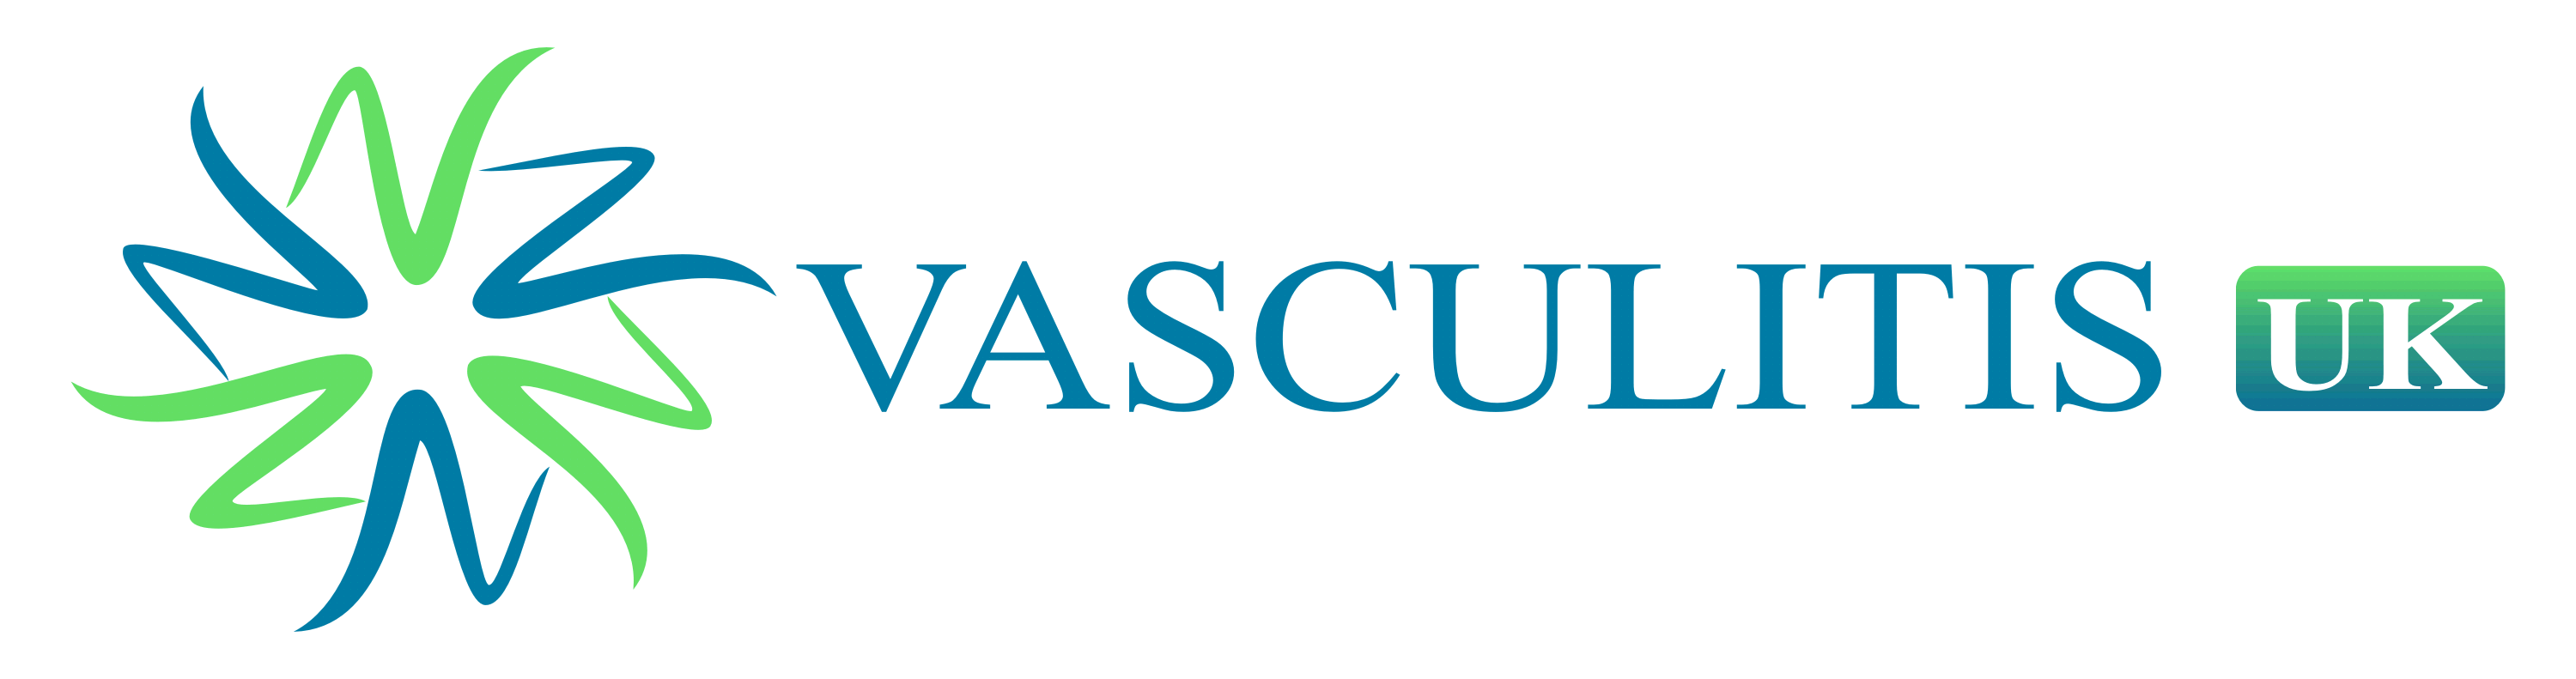 Vasculitis UK